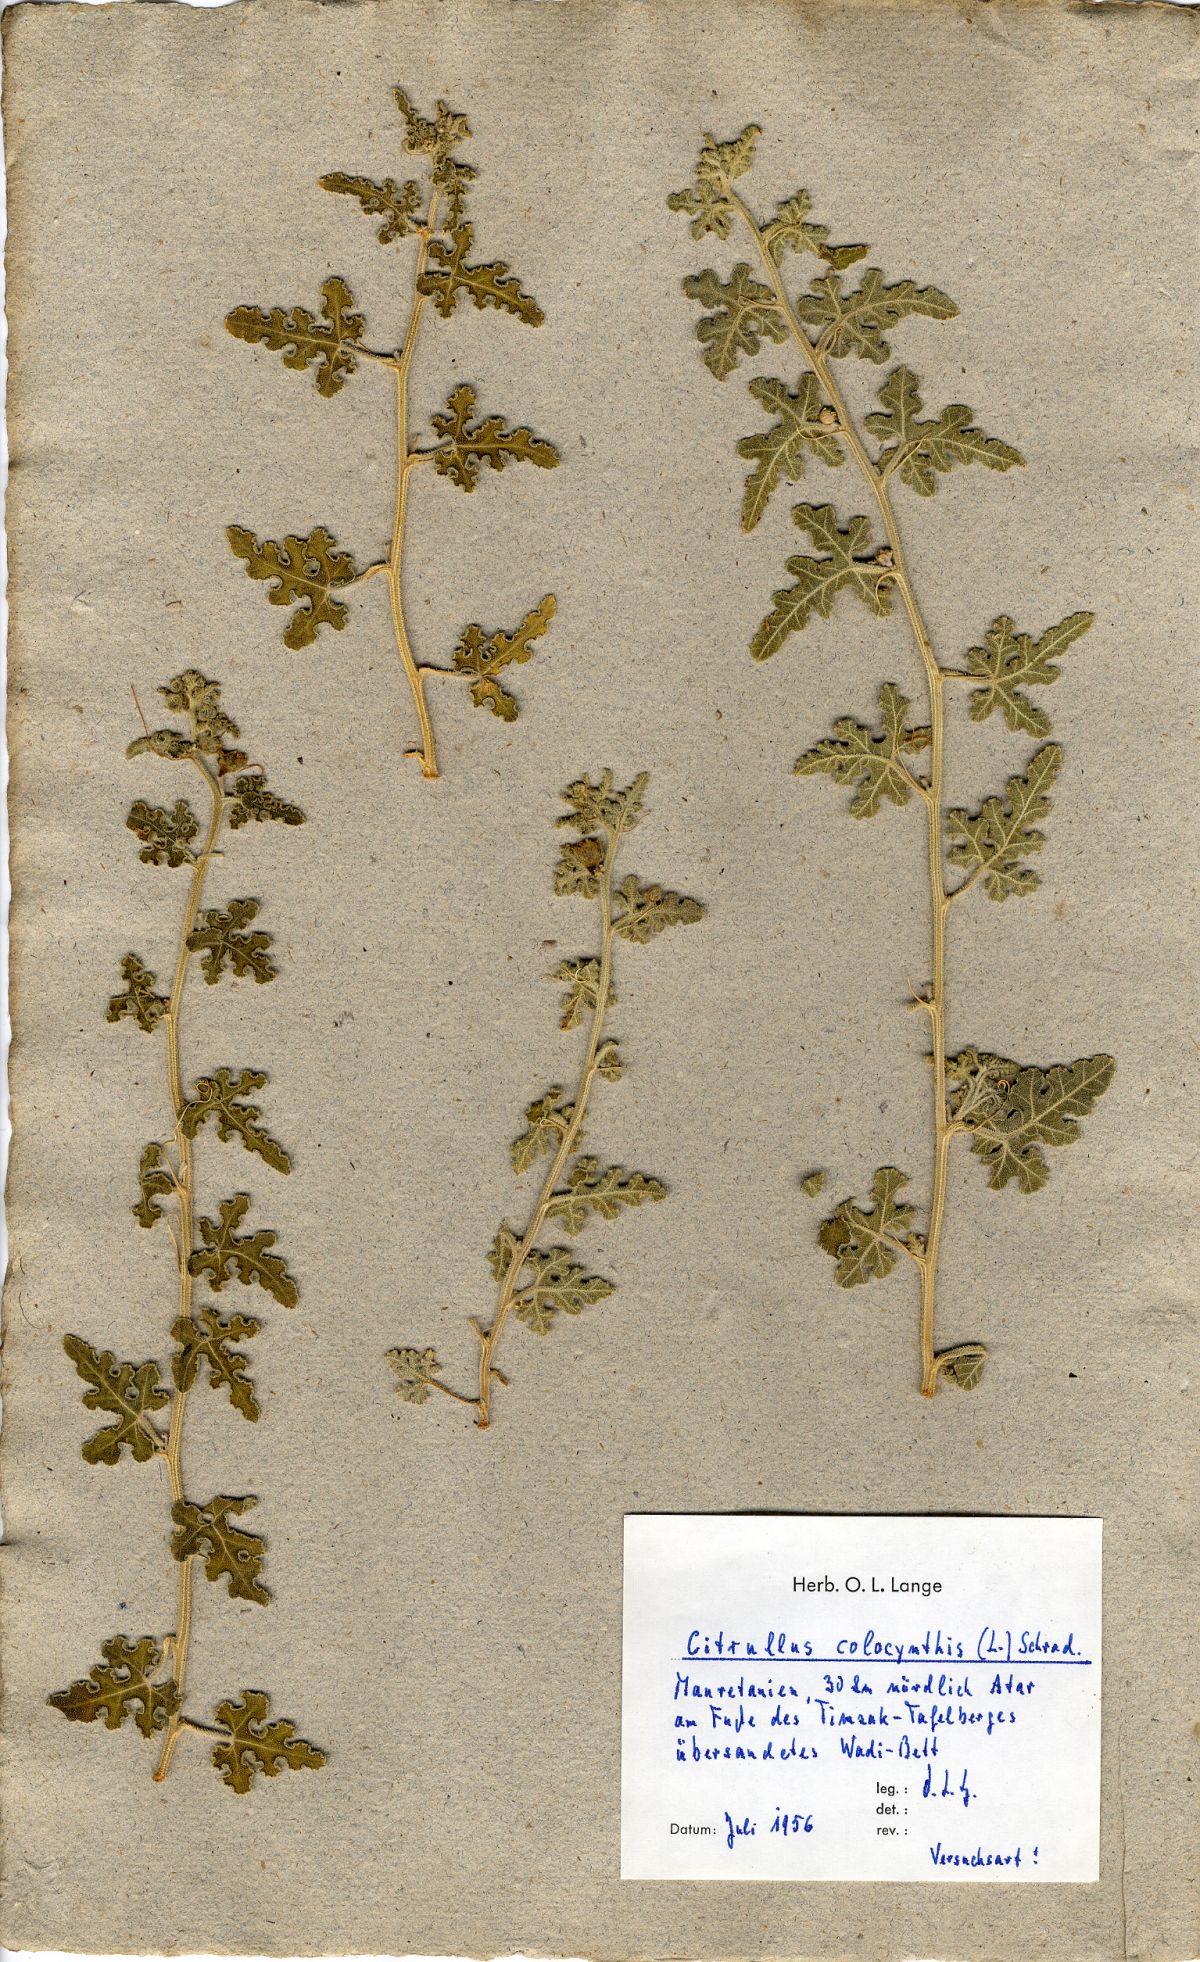 Die Koloquinte, mit der Otto Ludwig Lange 1956 experimentierte, ist bis heute erhalten. Sie befindet sich im Würzburger Herbarium.